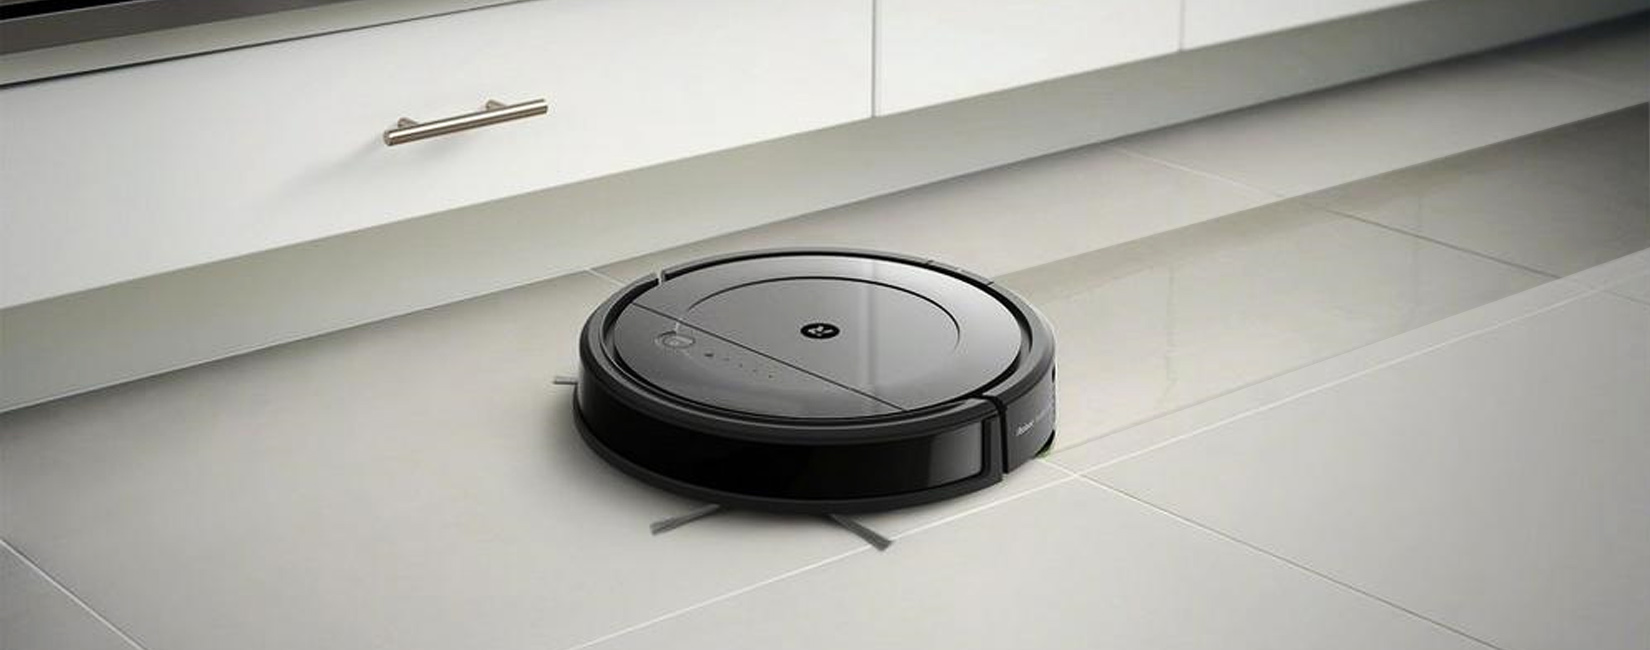 iRobot Roomba Combo робот пылесос 2 в 1 для сухой и влажной уборки